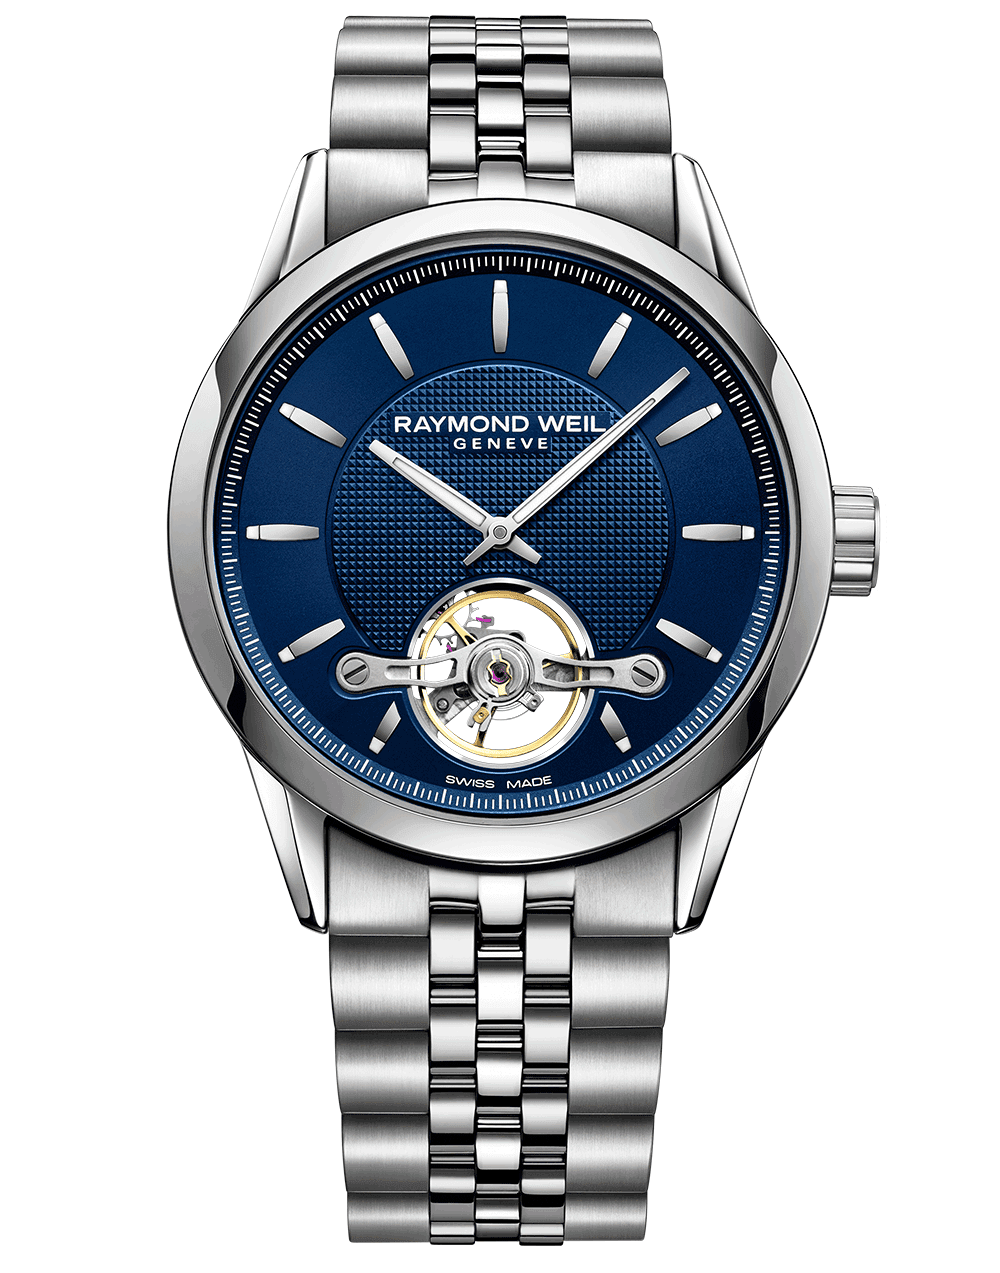 Replica Rolex Watch Amazon